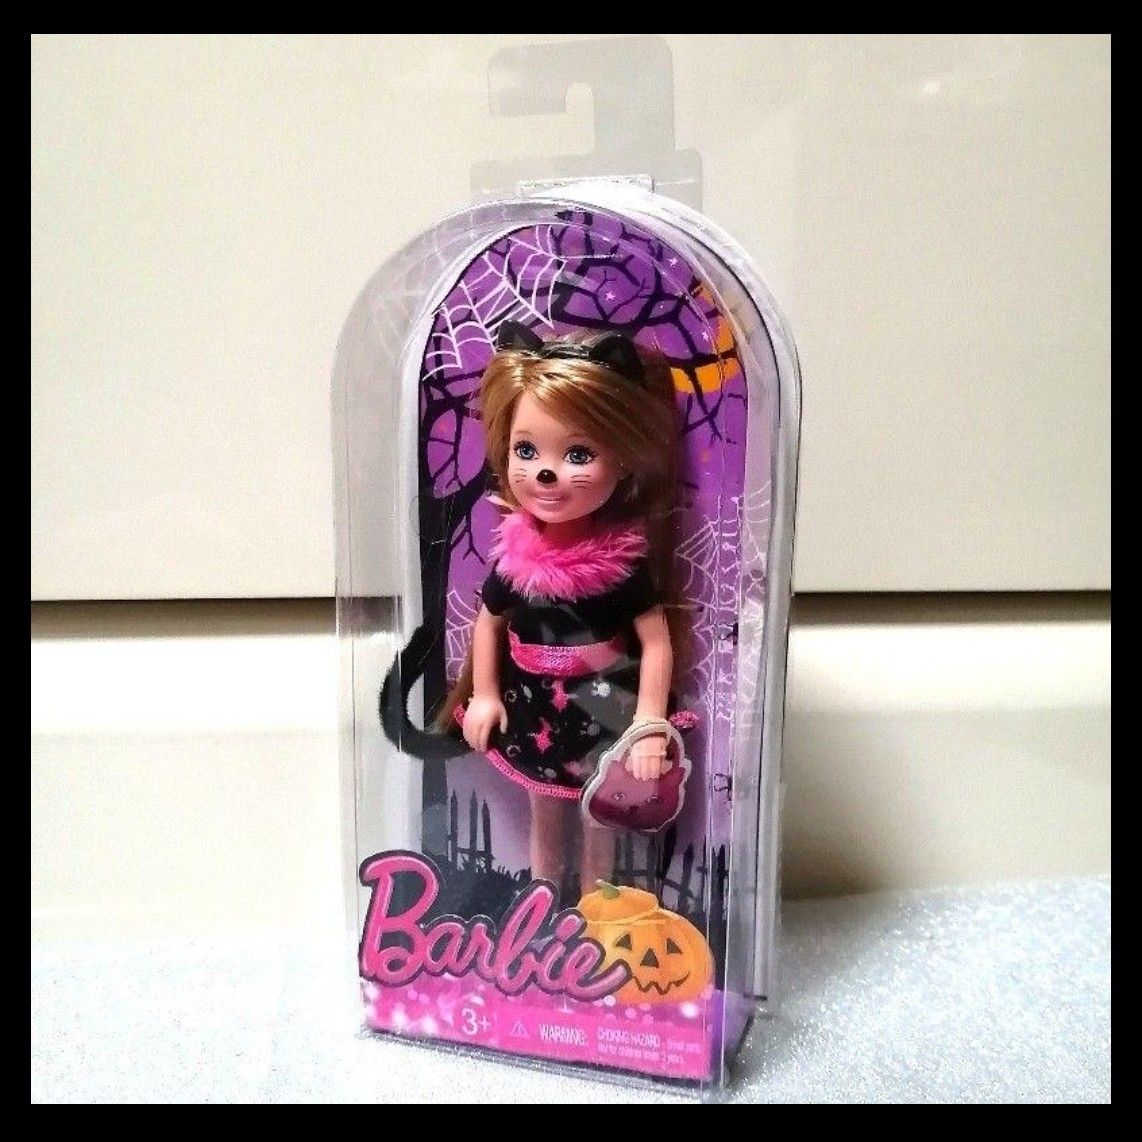 【値下げ不可】バービー 妹 チェルシー コスプレ ハロウィーン ハロウィン 猫 ドール 人形 Barbie 壁掛け パッケージ m